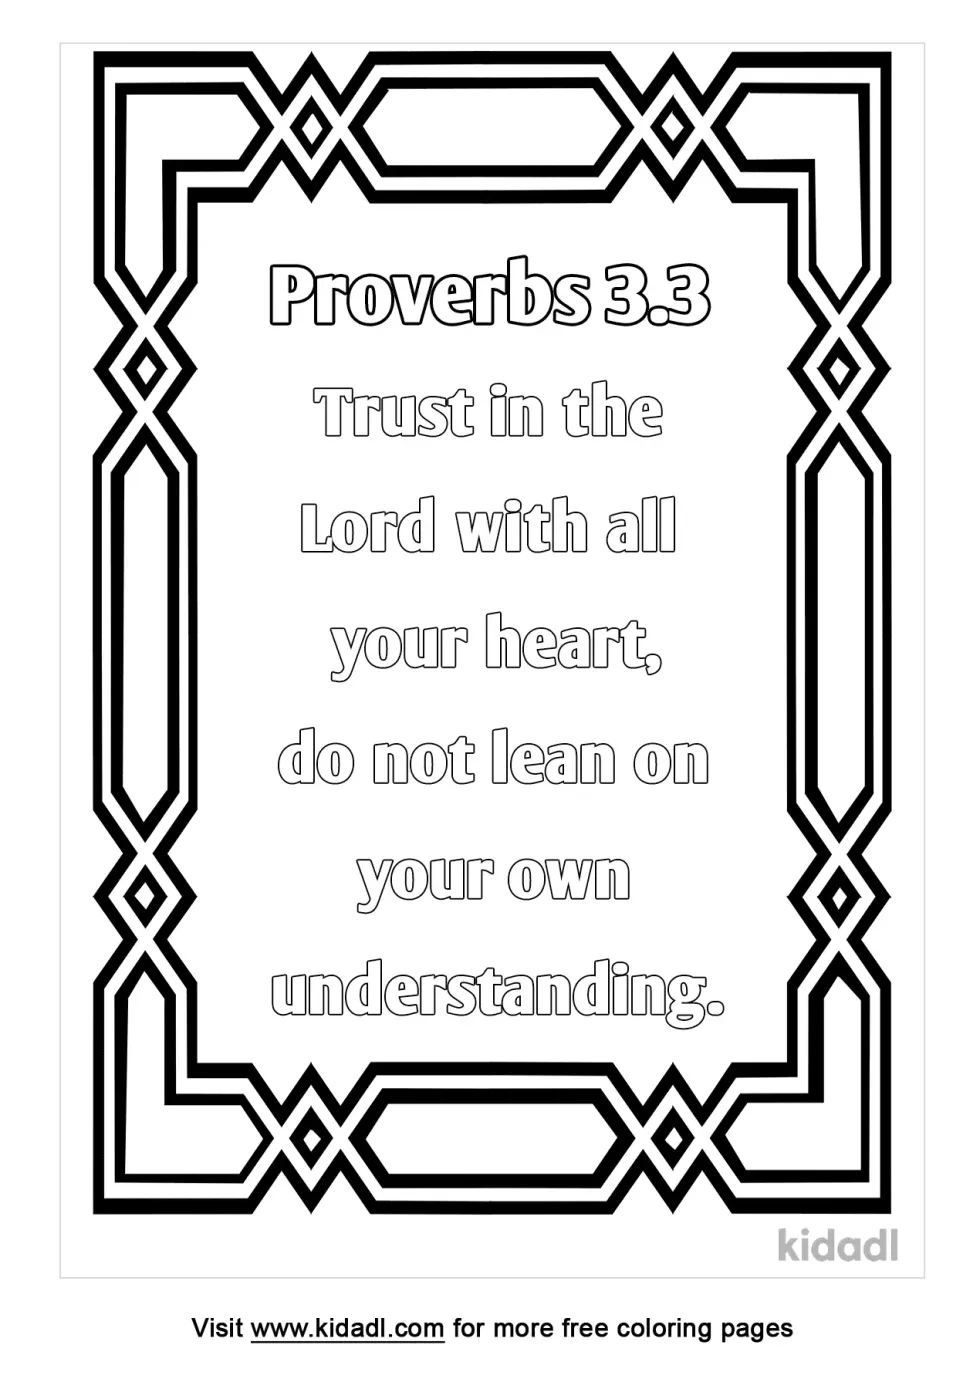 Proverbs 3:3